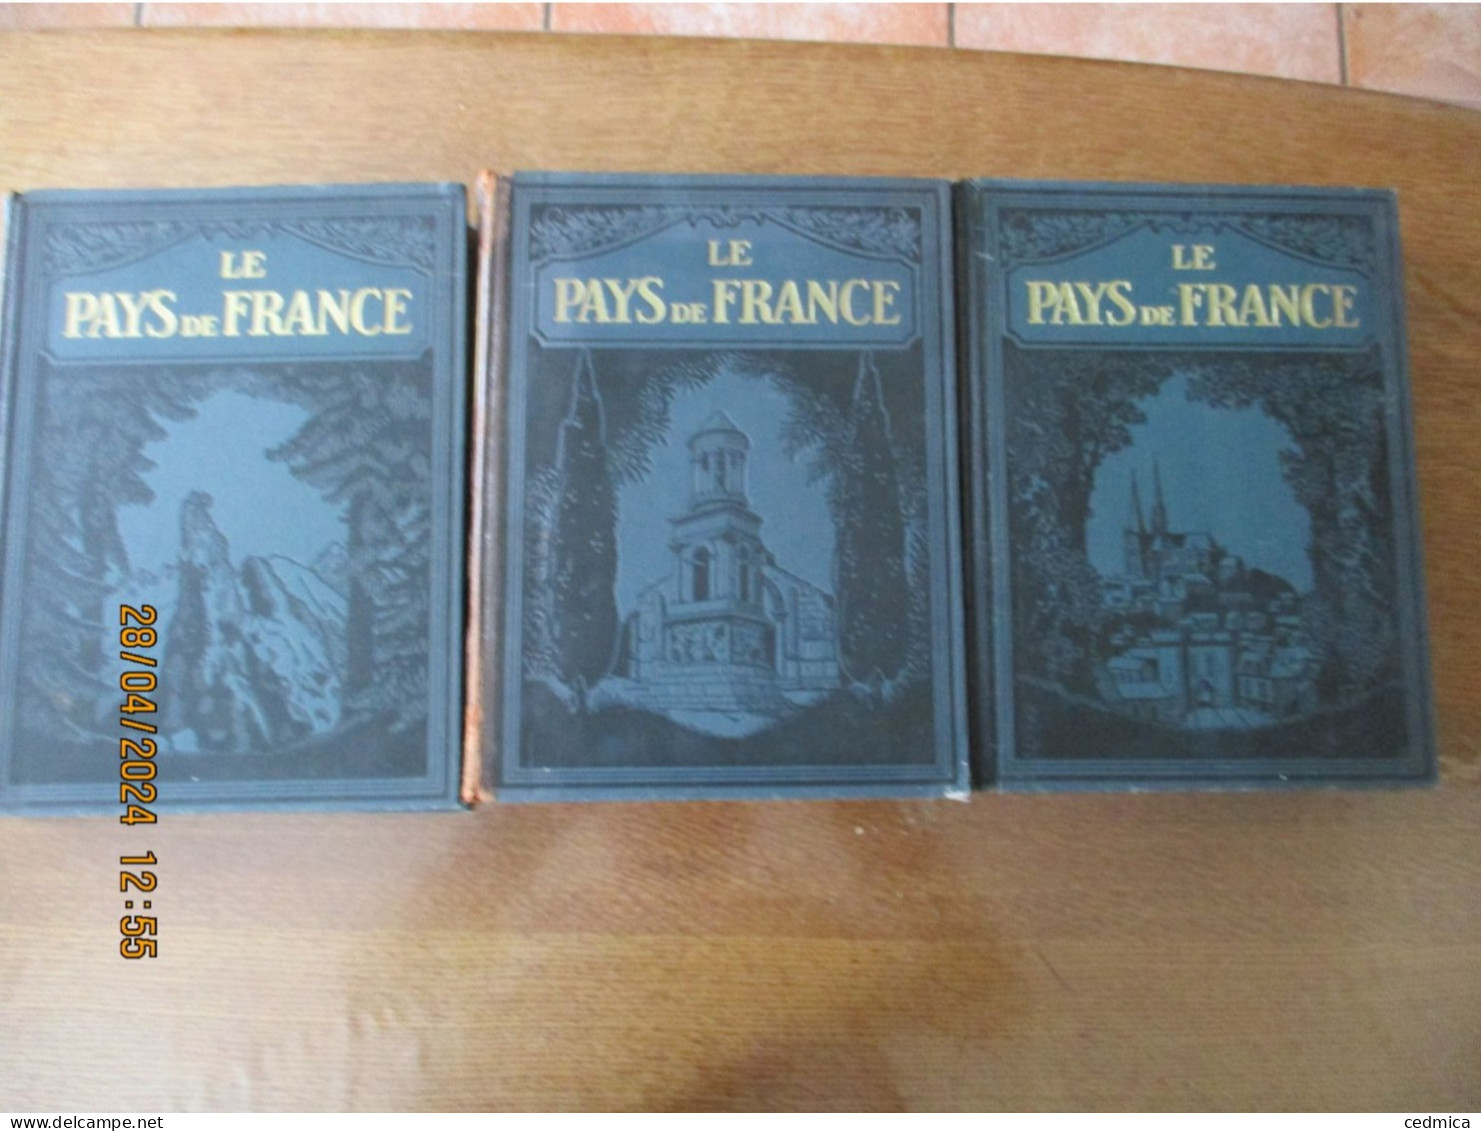 LE PAYS DE FRANCE TOMES 1,2 ET 3 LIBRAIRIE HACHETTE 1925 PUBLIE SOUS LA DIRECTION DE MARCEL MONMARCHE ET LUCIEN TILLION - Aardrijkskunde